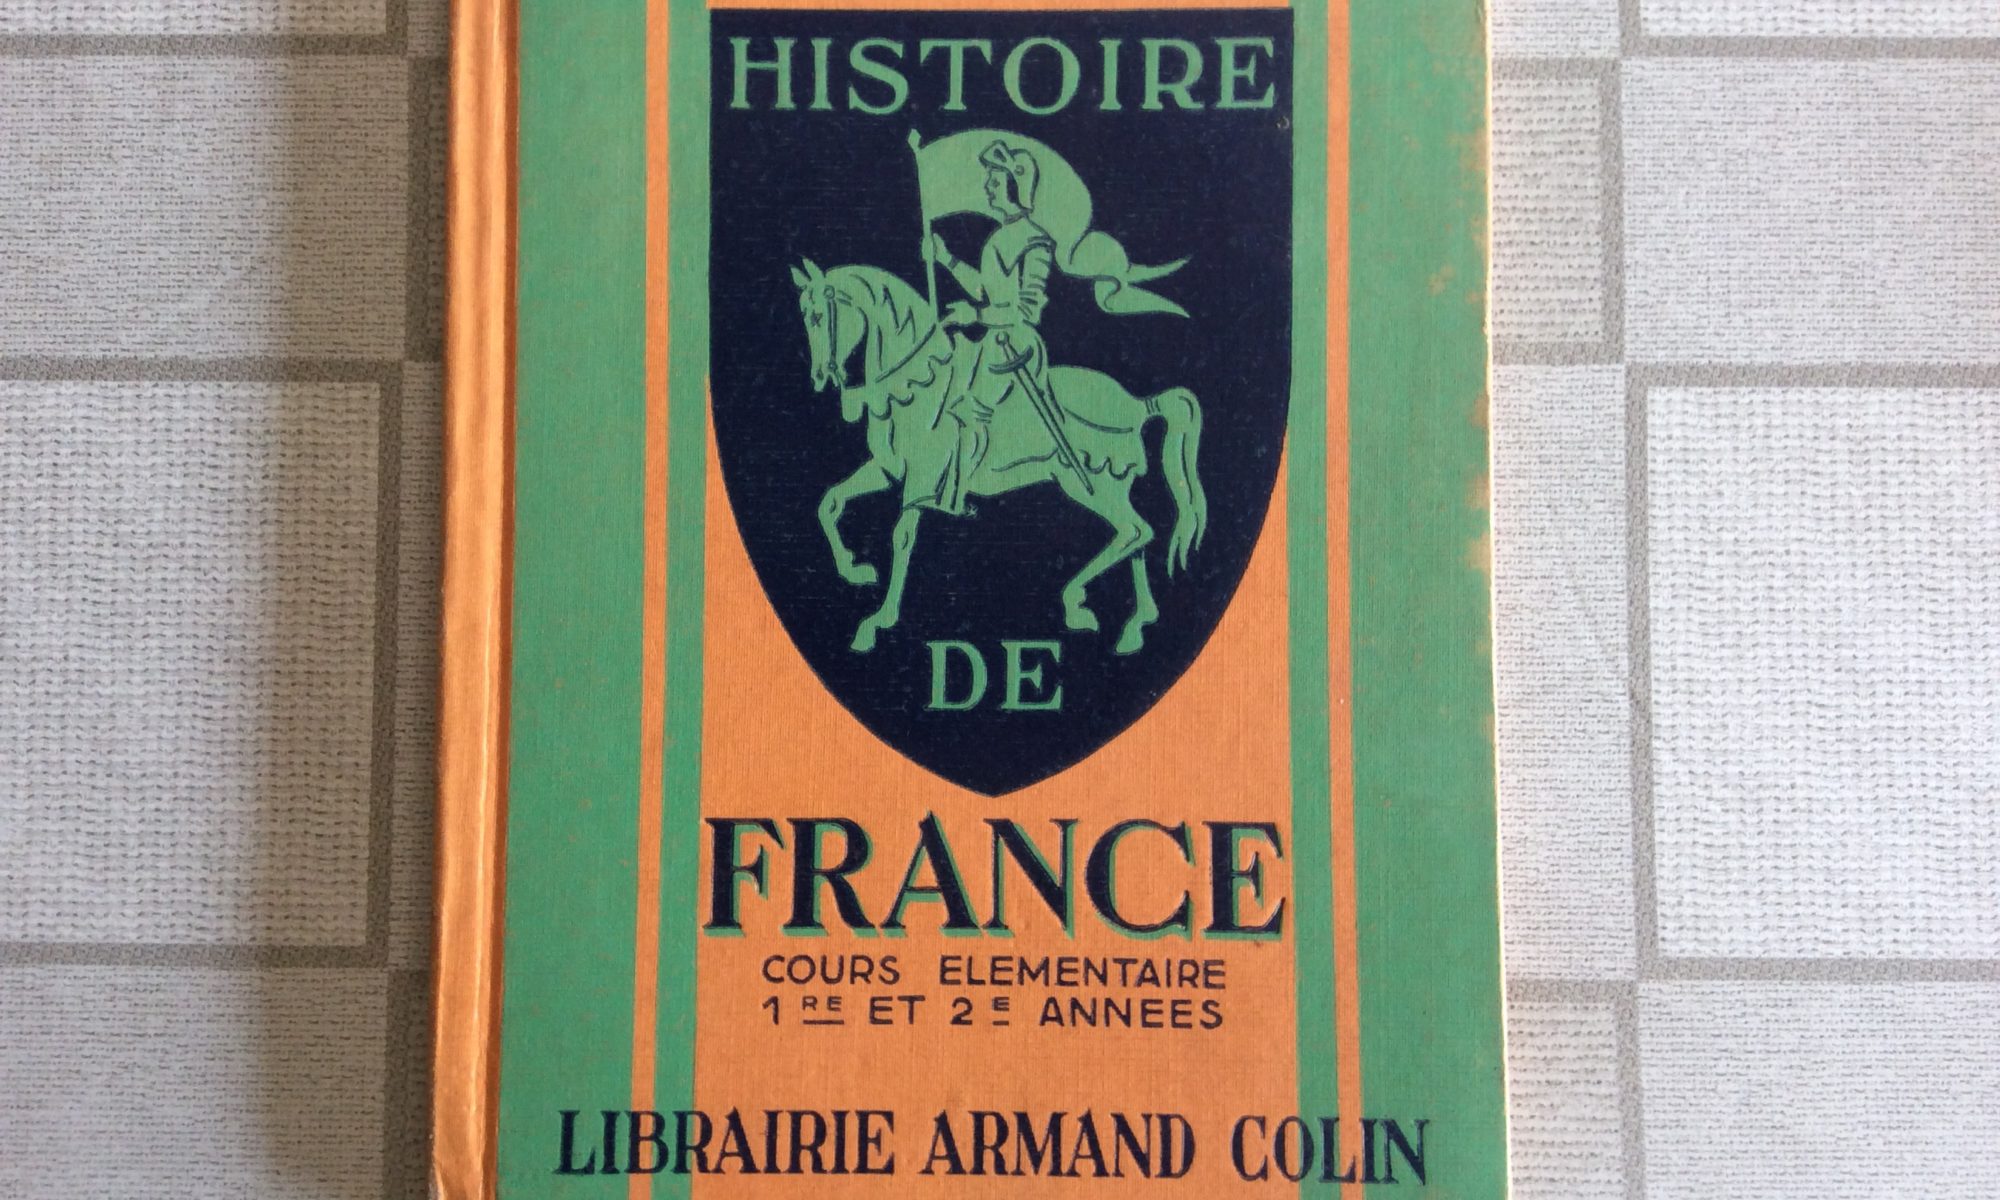 LIVRE SCOLAIRE ANCIEN HISTOIRE DE FRANCE